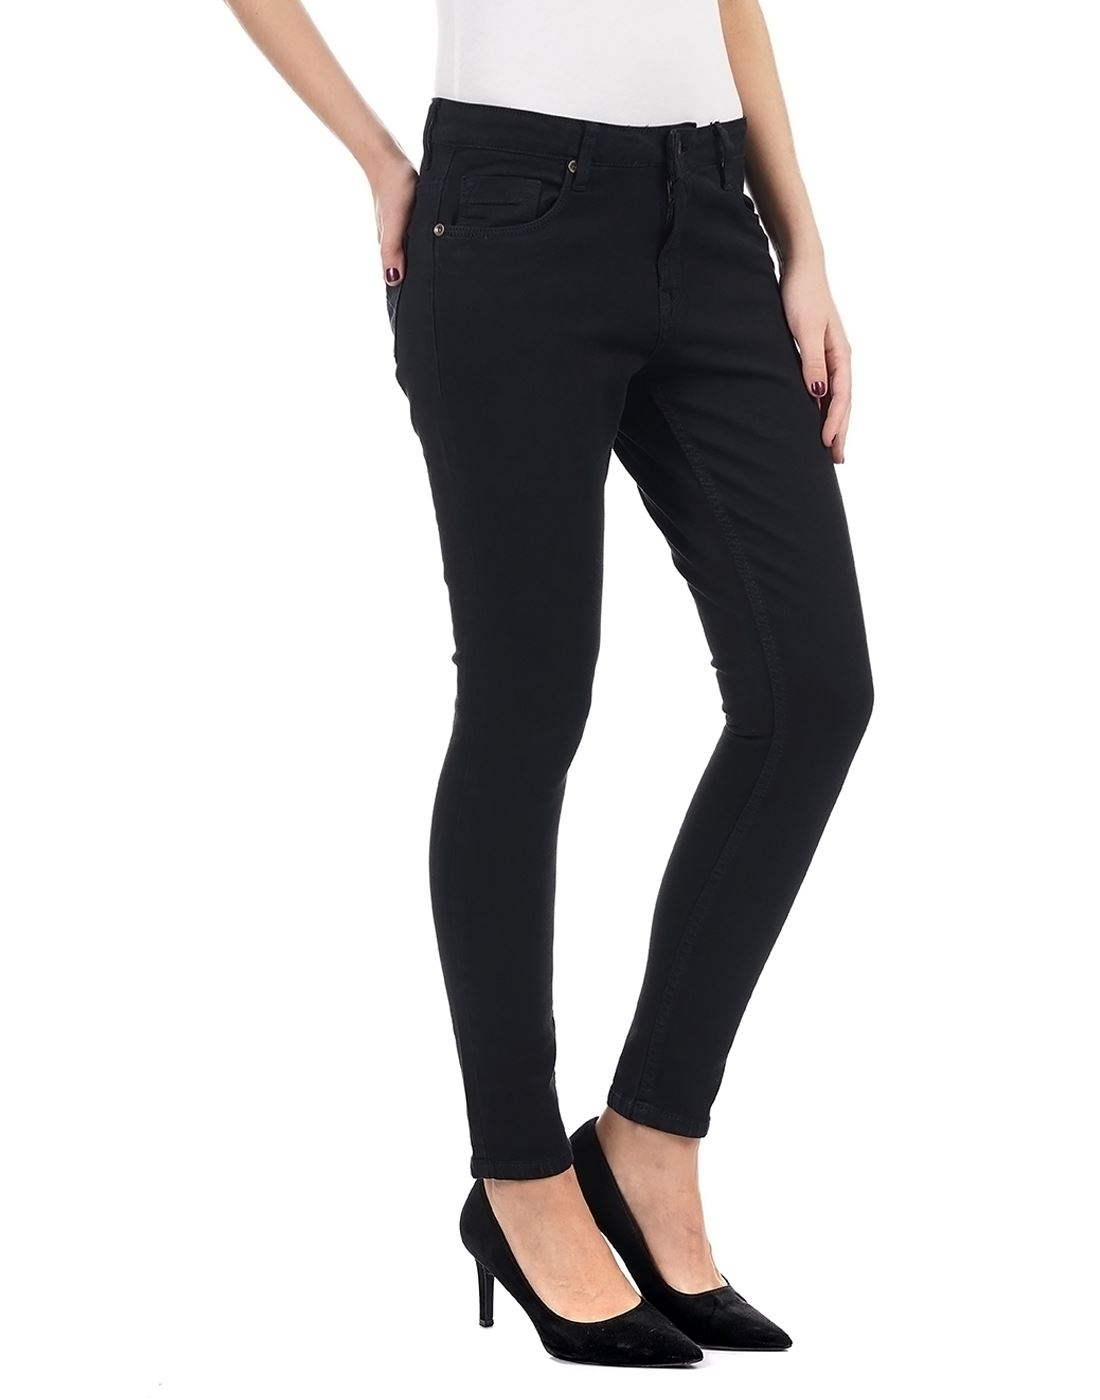 Carrera Women Casual Wear Black Jeans